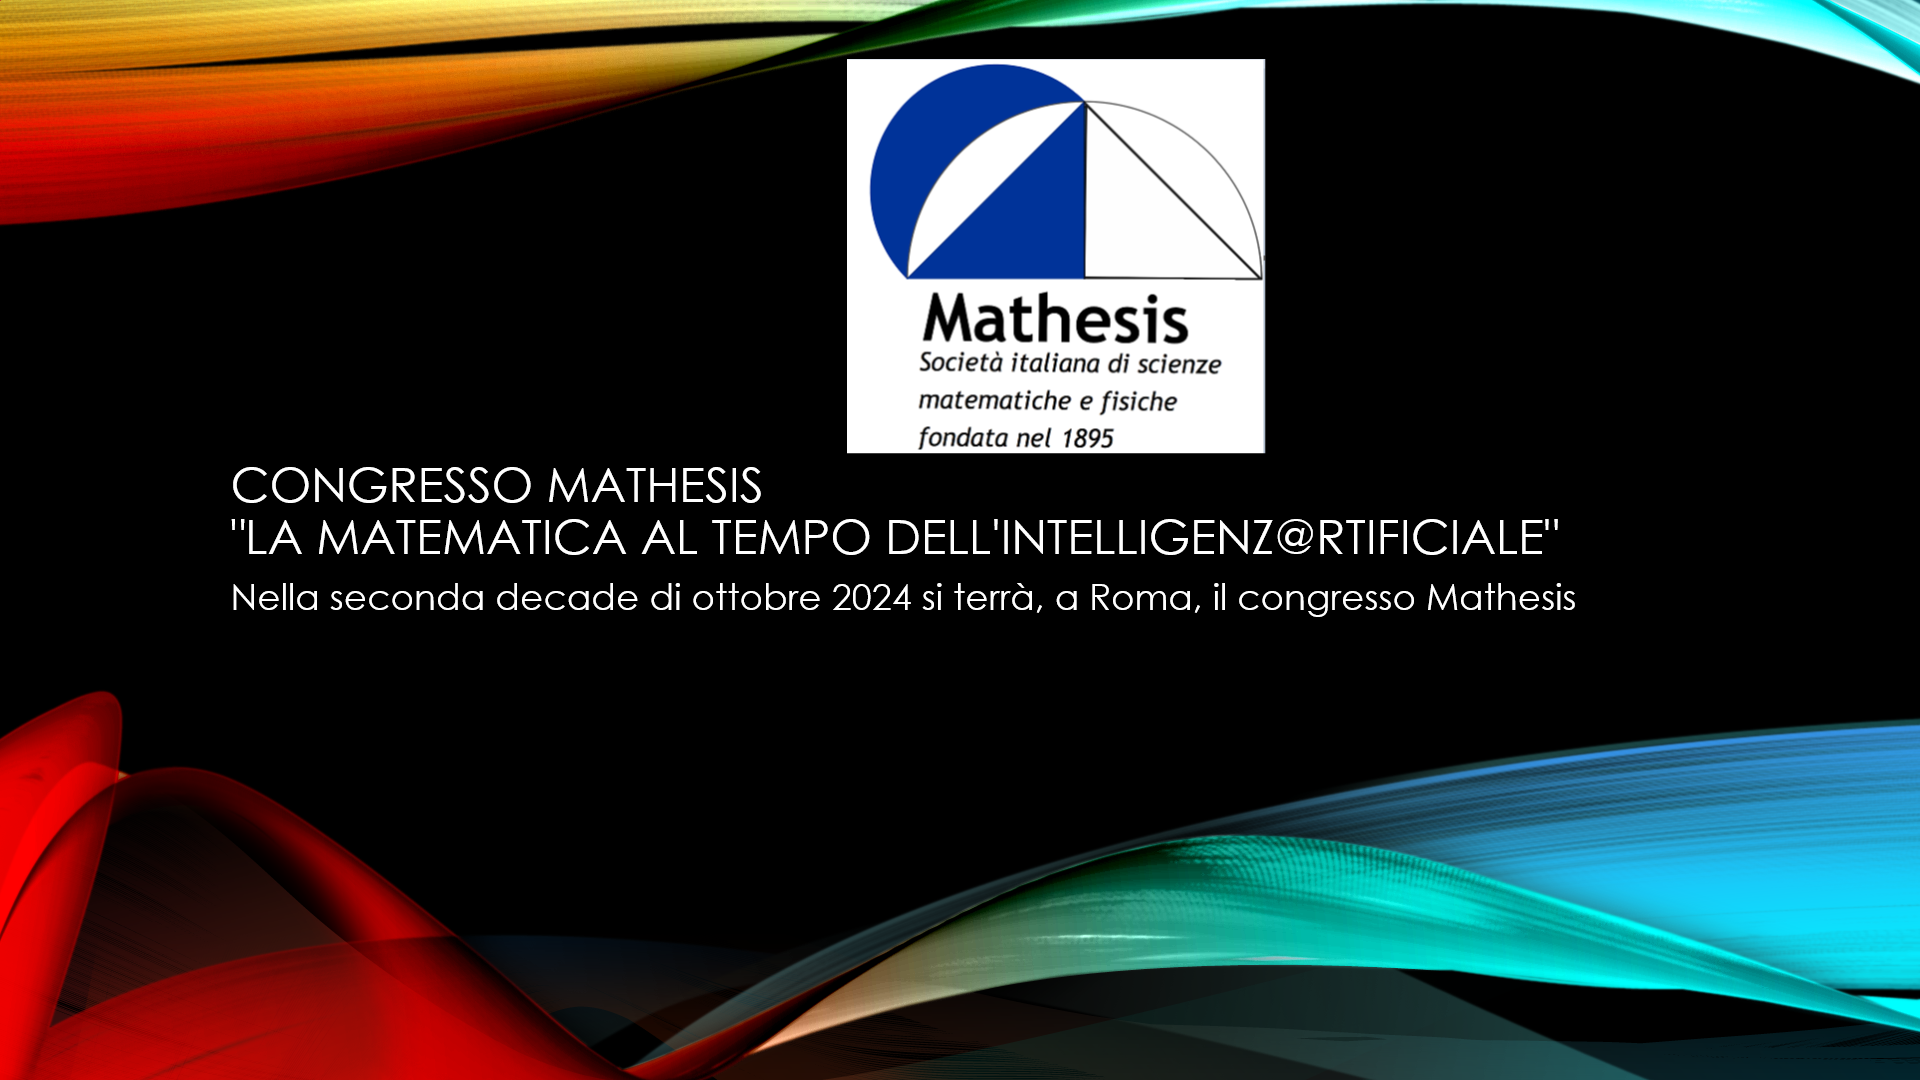 Congresso Mathesis  “La matematica al tempo dell’intelligenz@rtificiale”